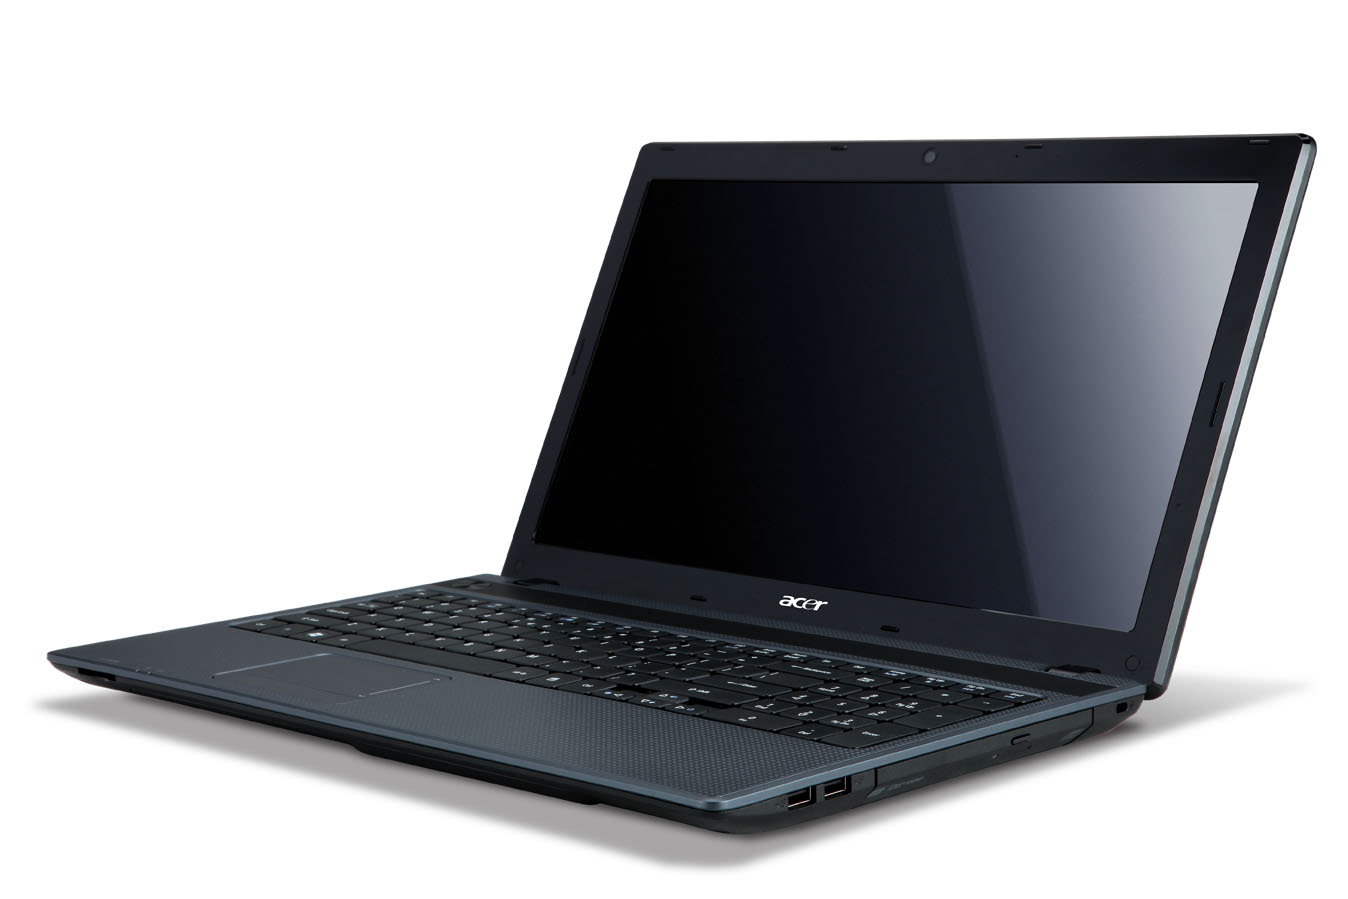 Daftar Harga Laptop Acer Baru Bekas Second di Jual Murah Online | Harga